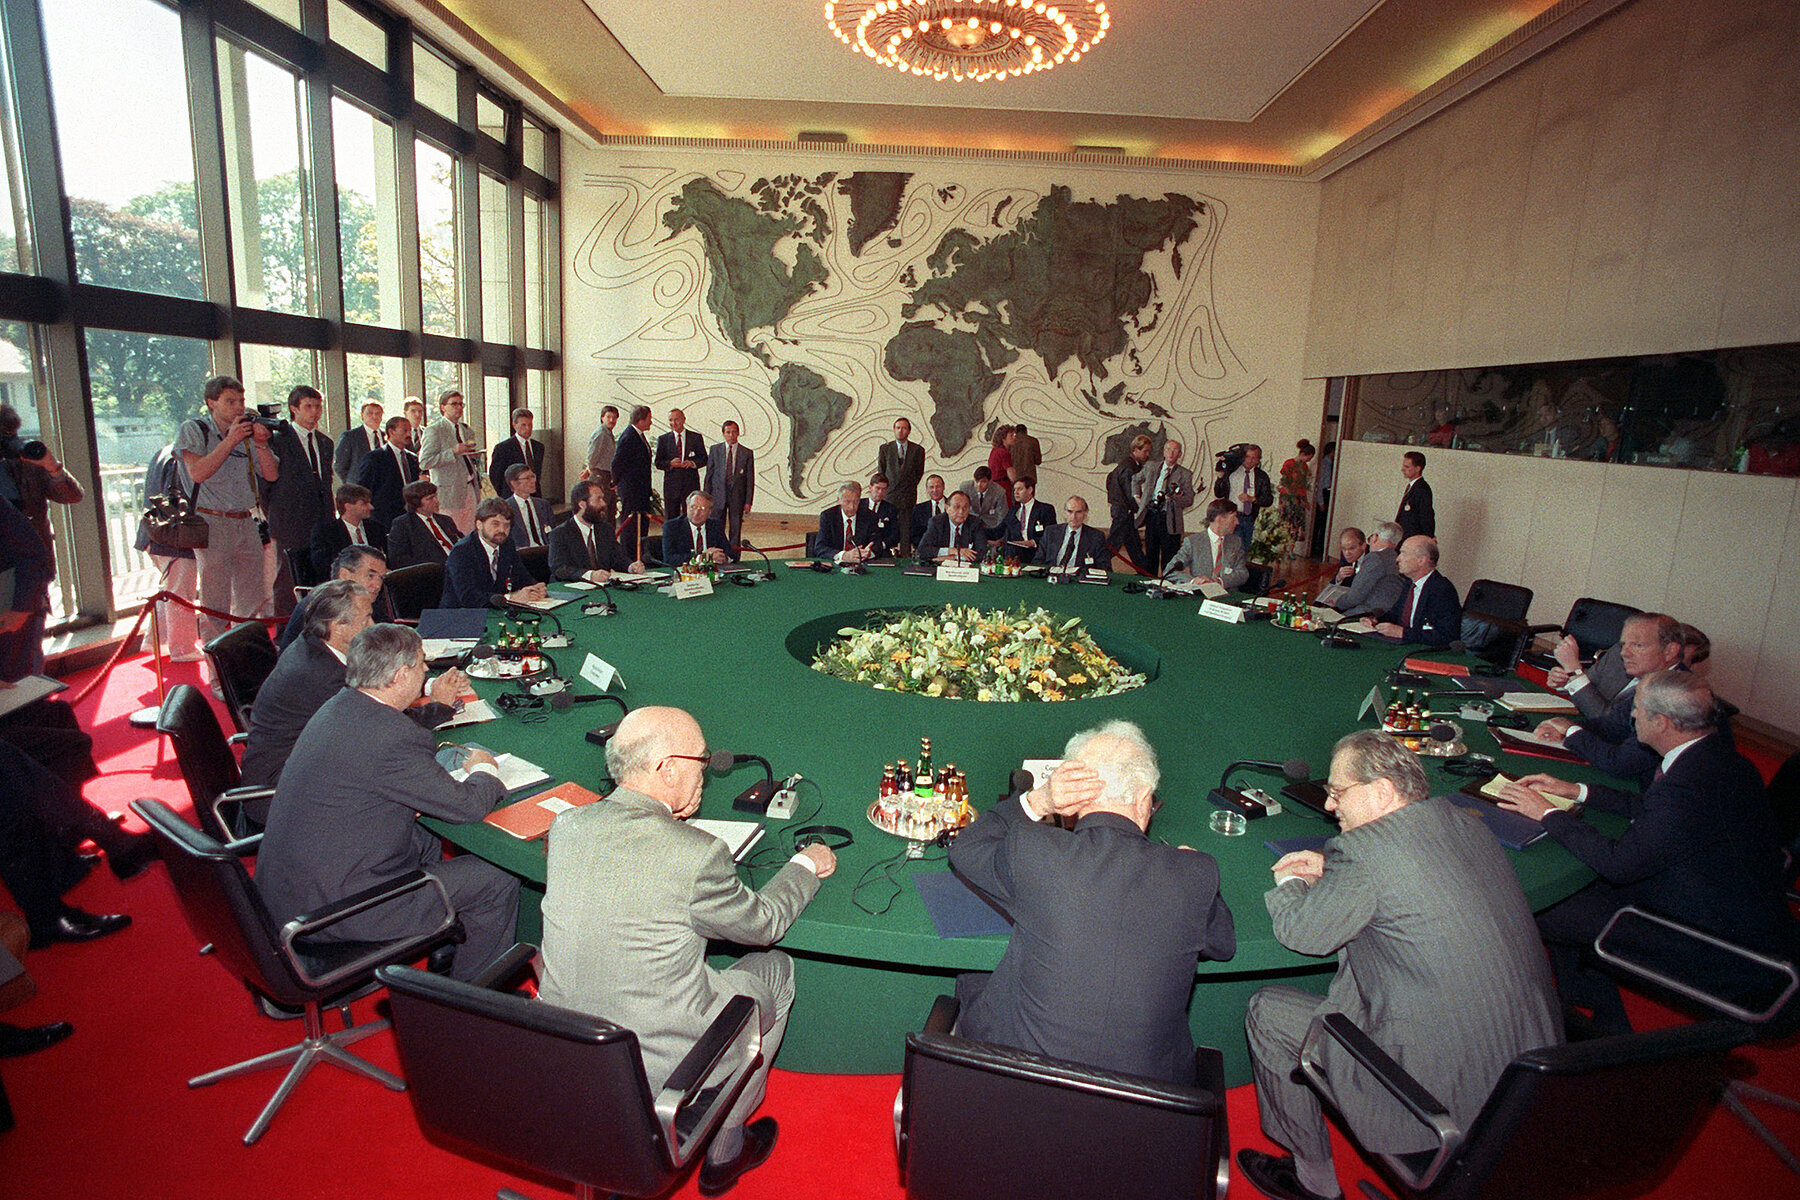 Mehrere Männer in Anzügen sitzen um einen großen grünen runden Tisch. Auf der linken Seite stehen fotografierende Journalisten. 